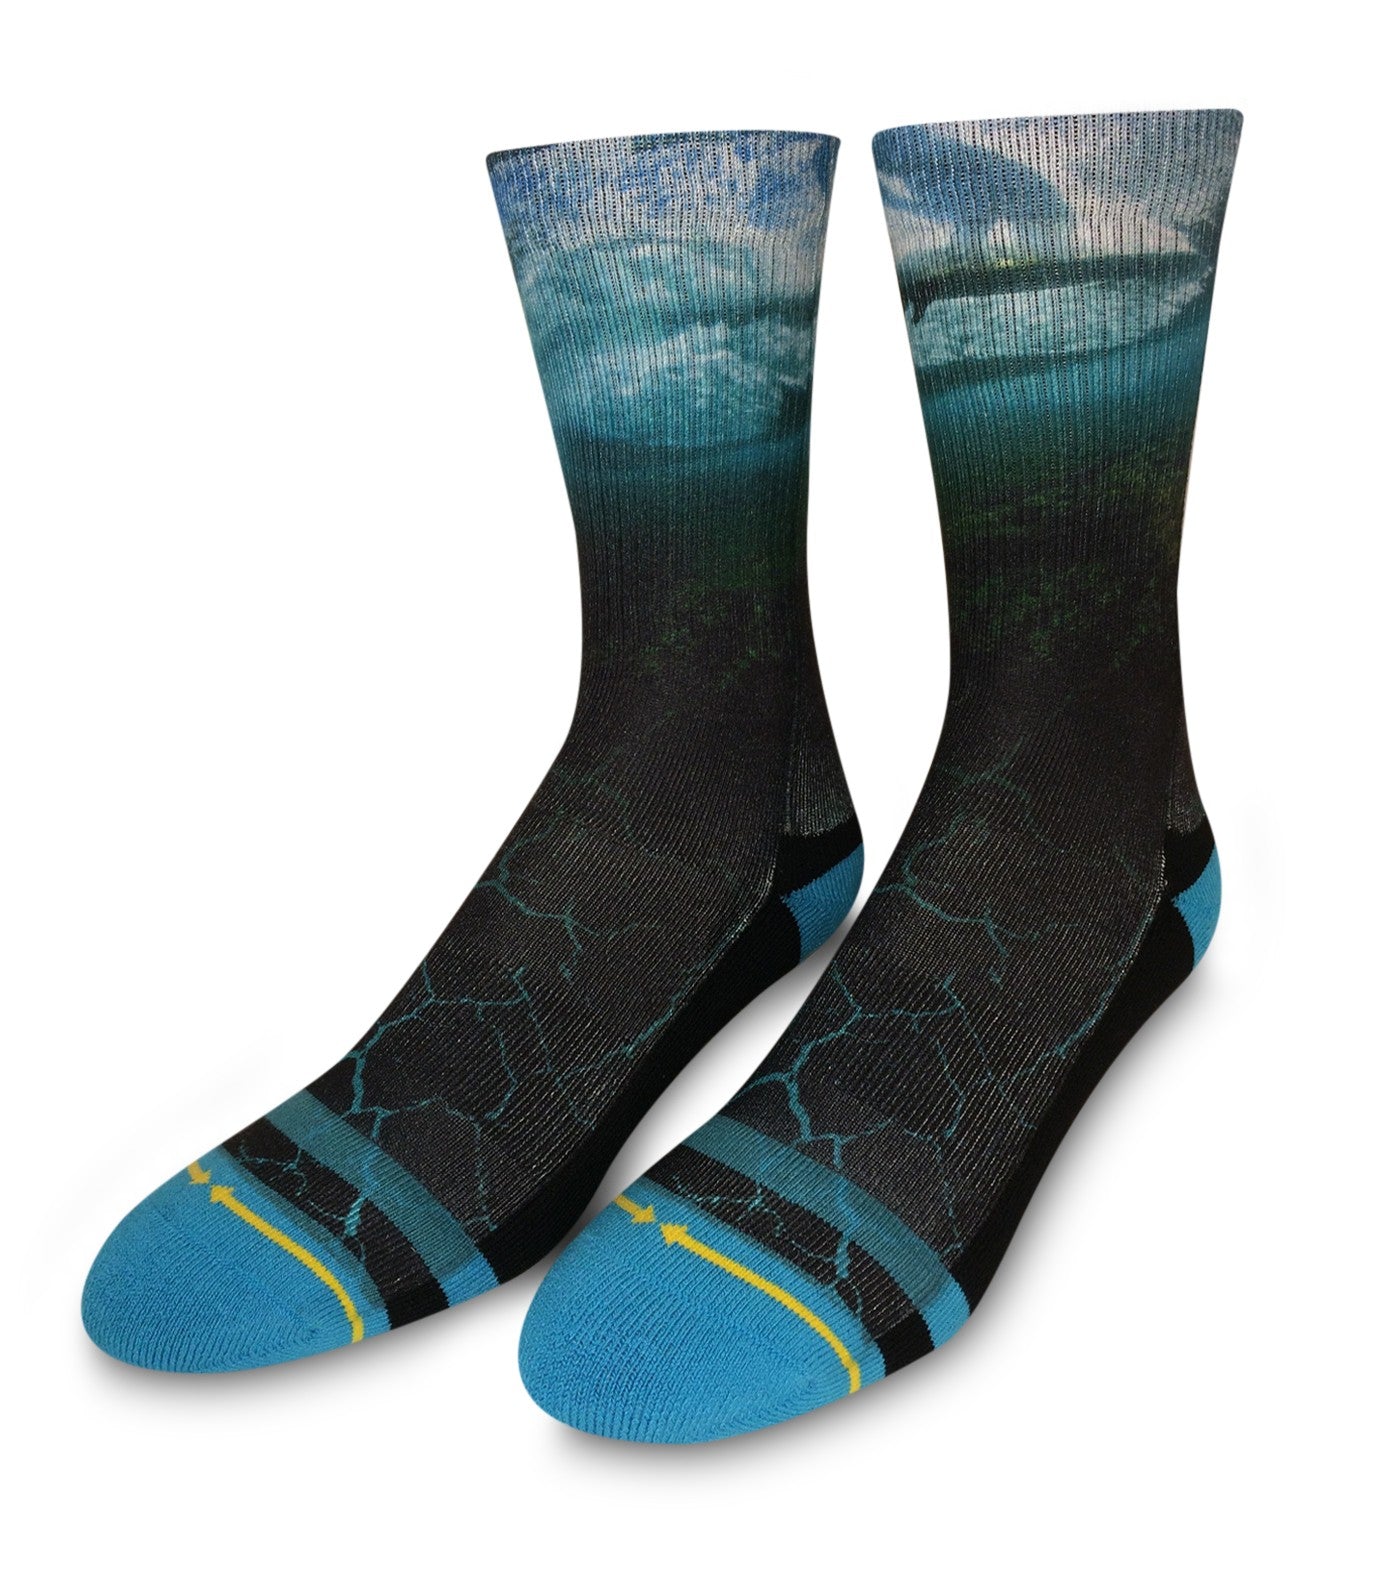 Surf socks